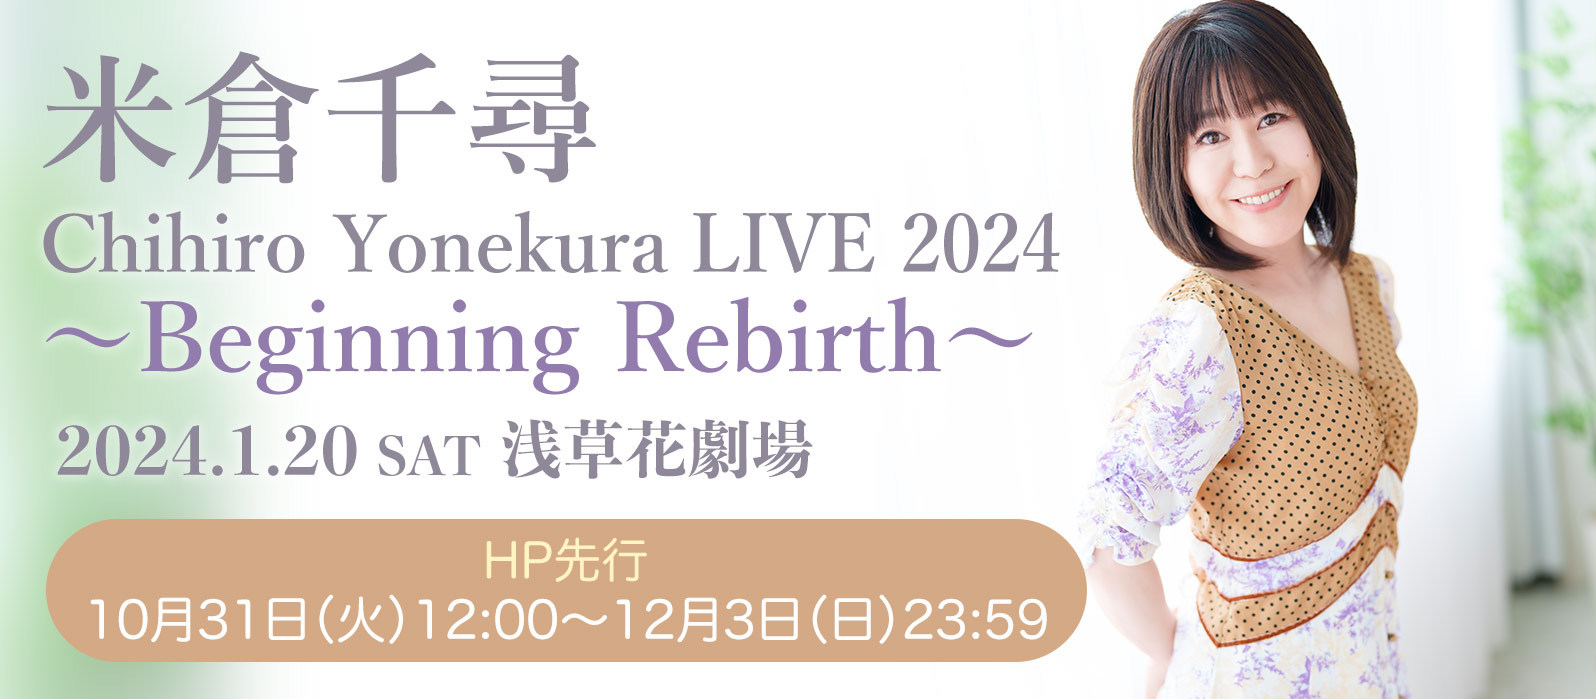 ワンマンライブ「Chihiro Yonekura LIVE 2024 〜Beginning Rebirth〜」開催決定&#127881;HP先行開始！_a0114206_20552938.jpg